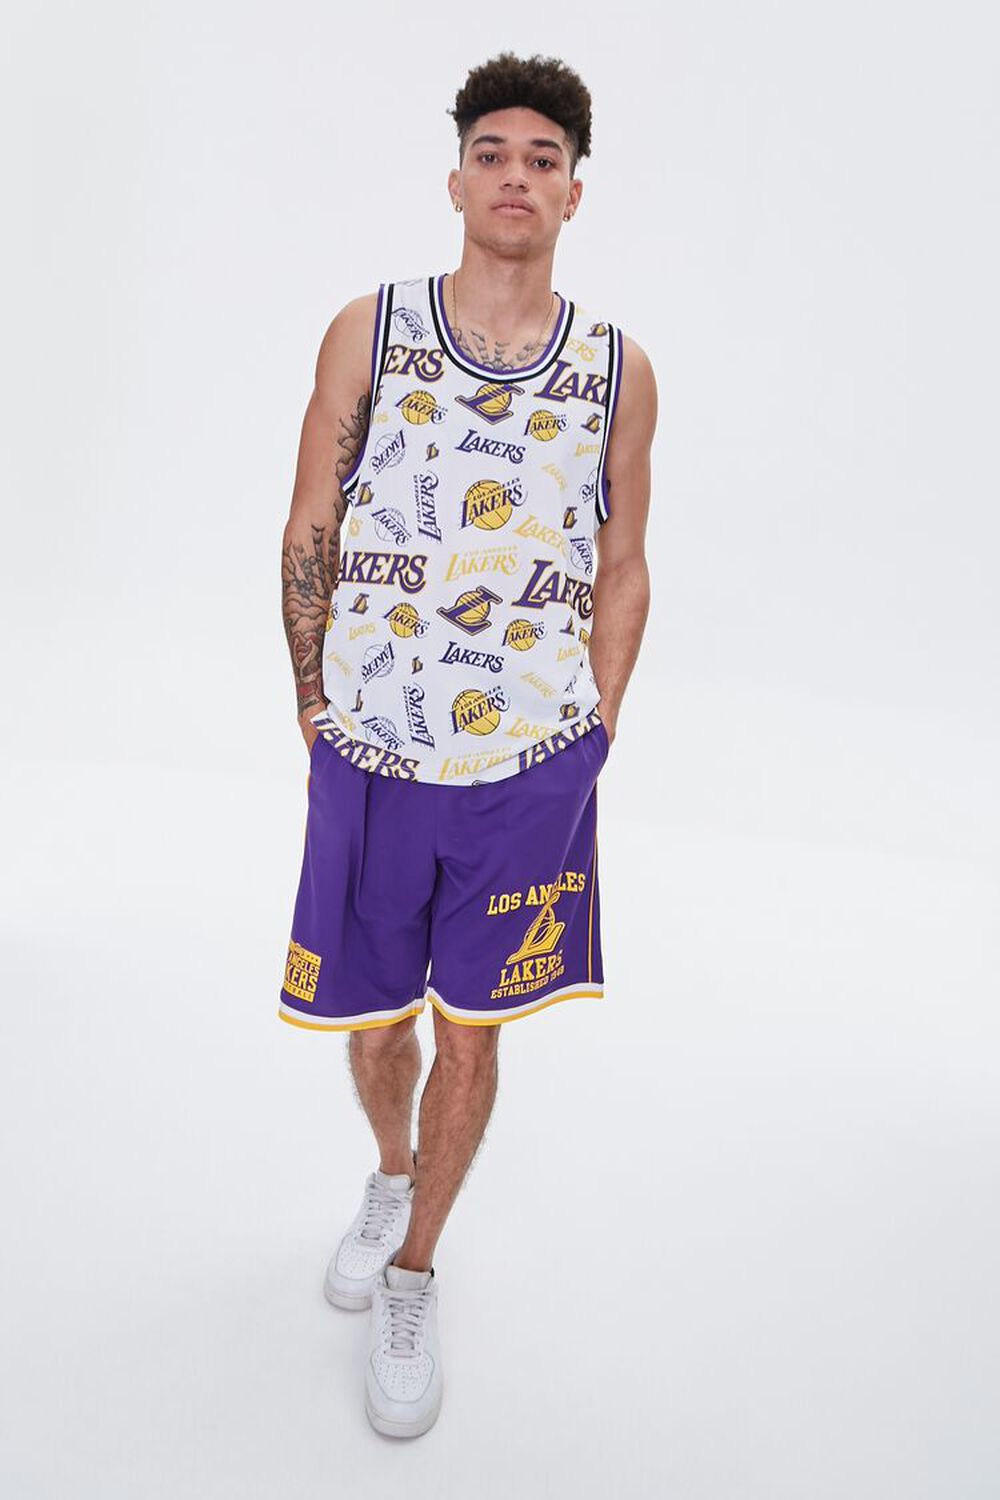 Purple Lakers, Camisole Pjs Short Set